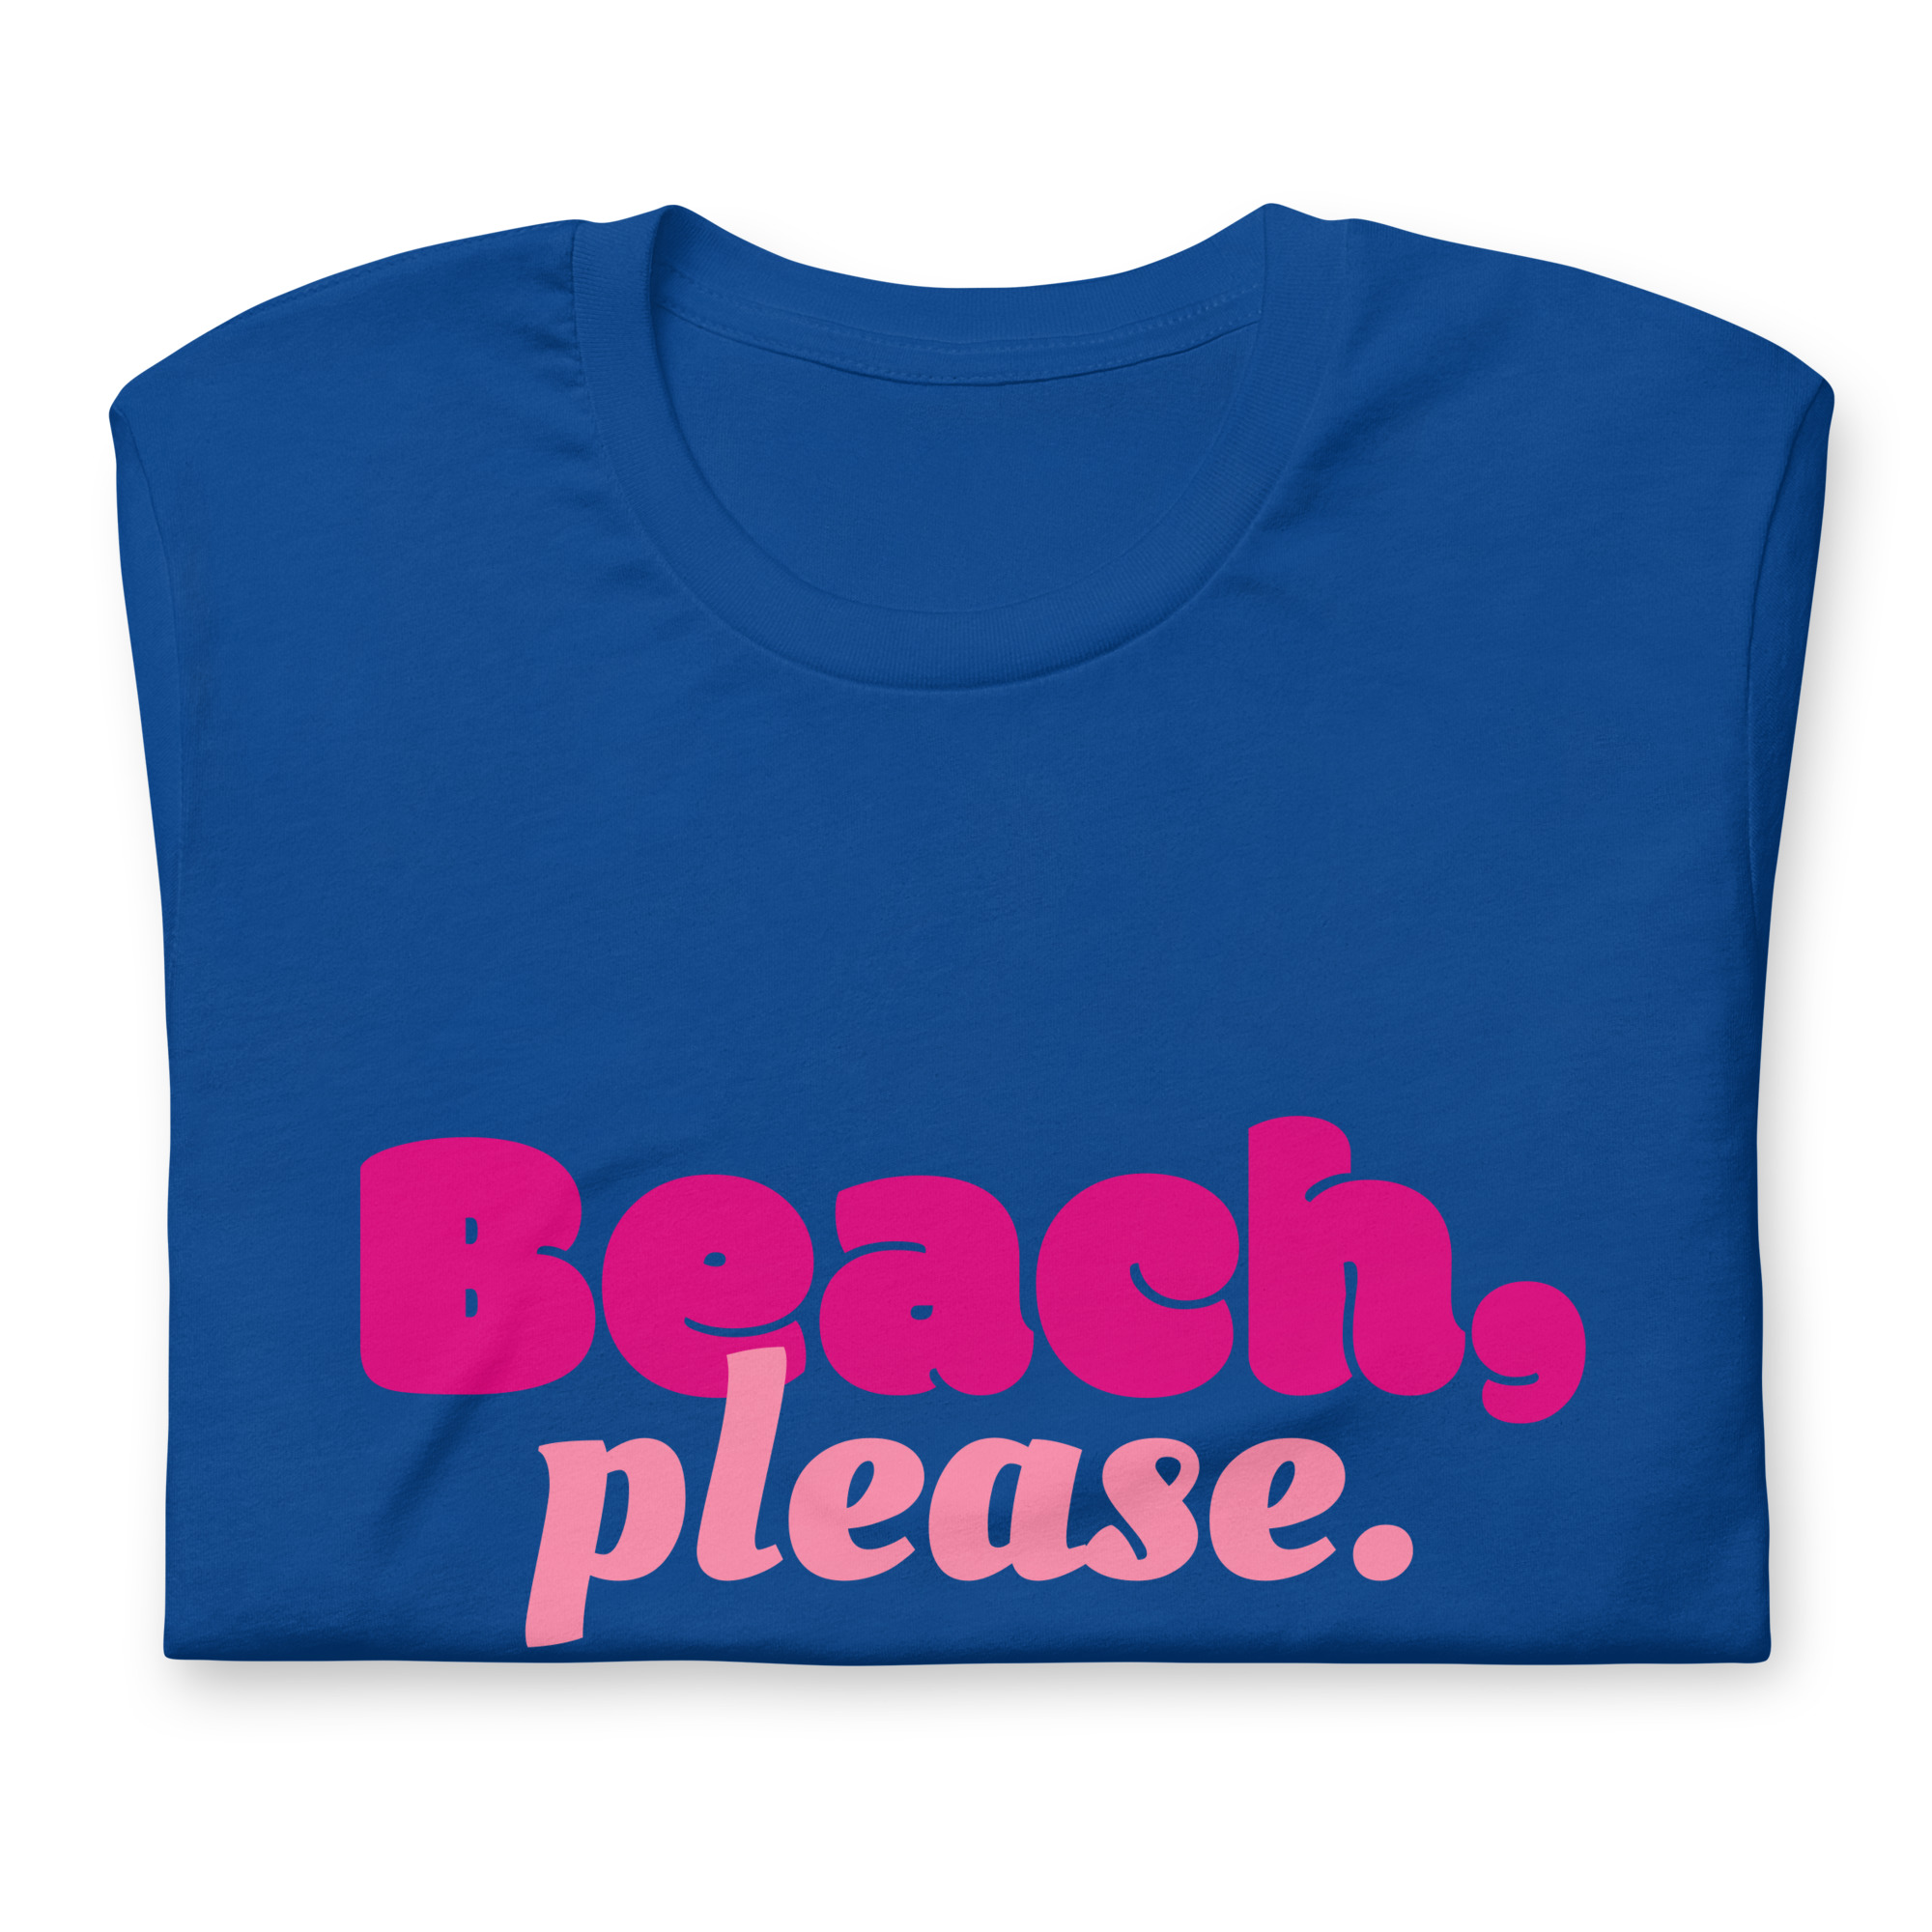 “Beach, please.” – Unisex-T-Shirt